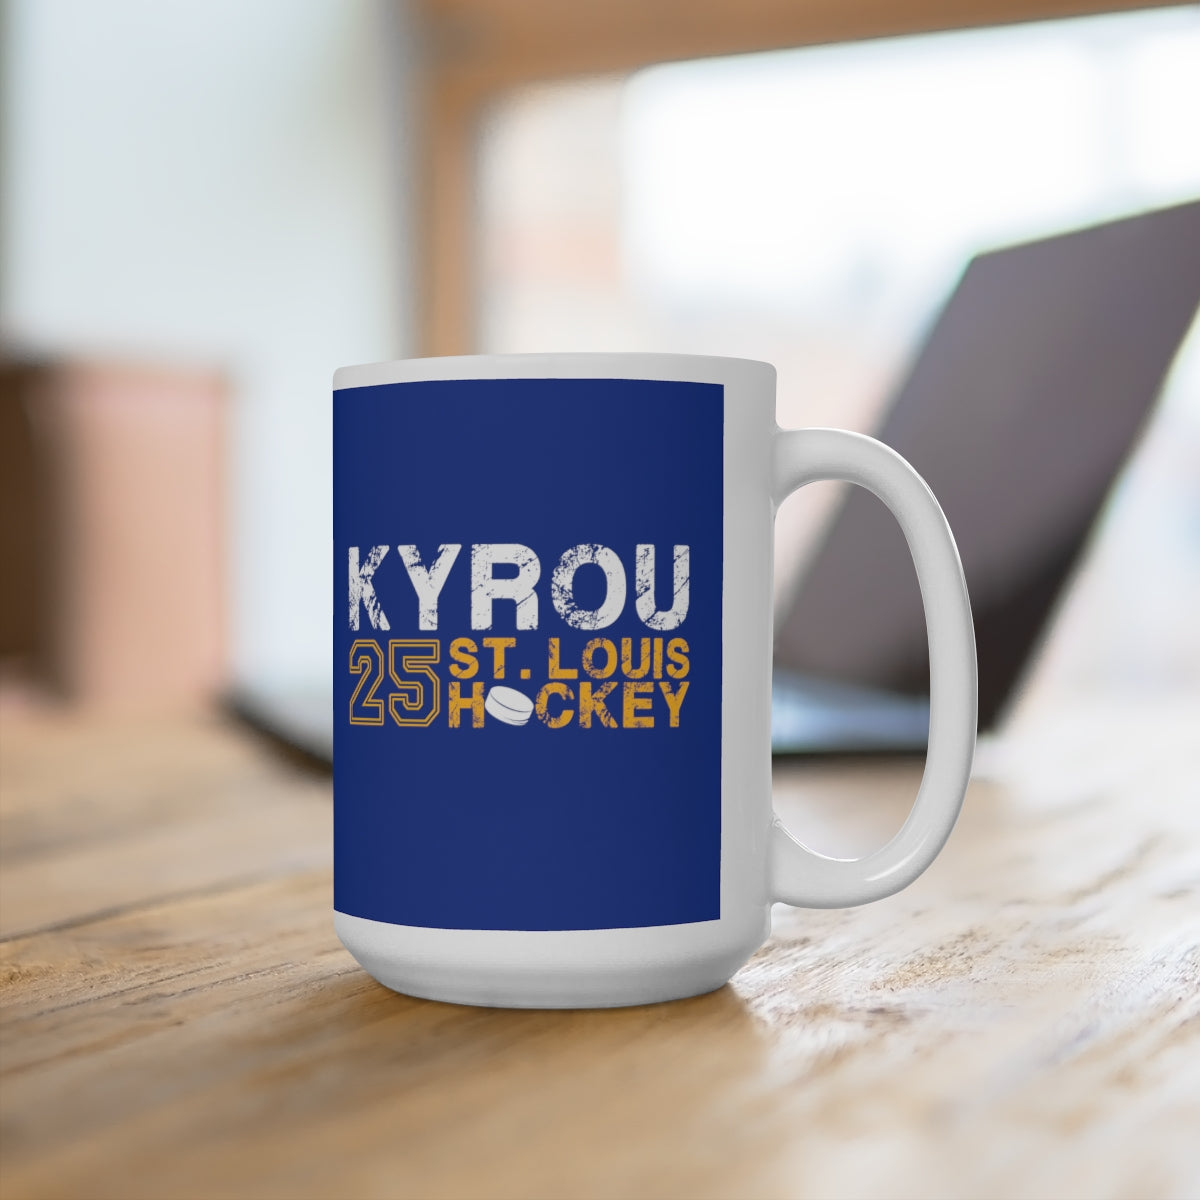 Kyrou 25 St. Louis Hockey Ceramic Coffee Mug In Blue, 15oz